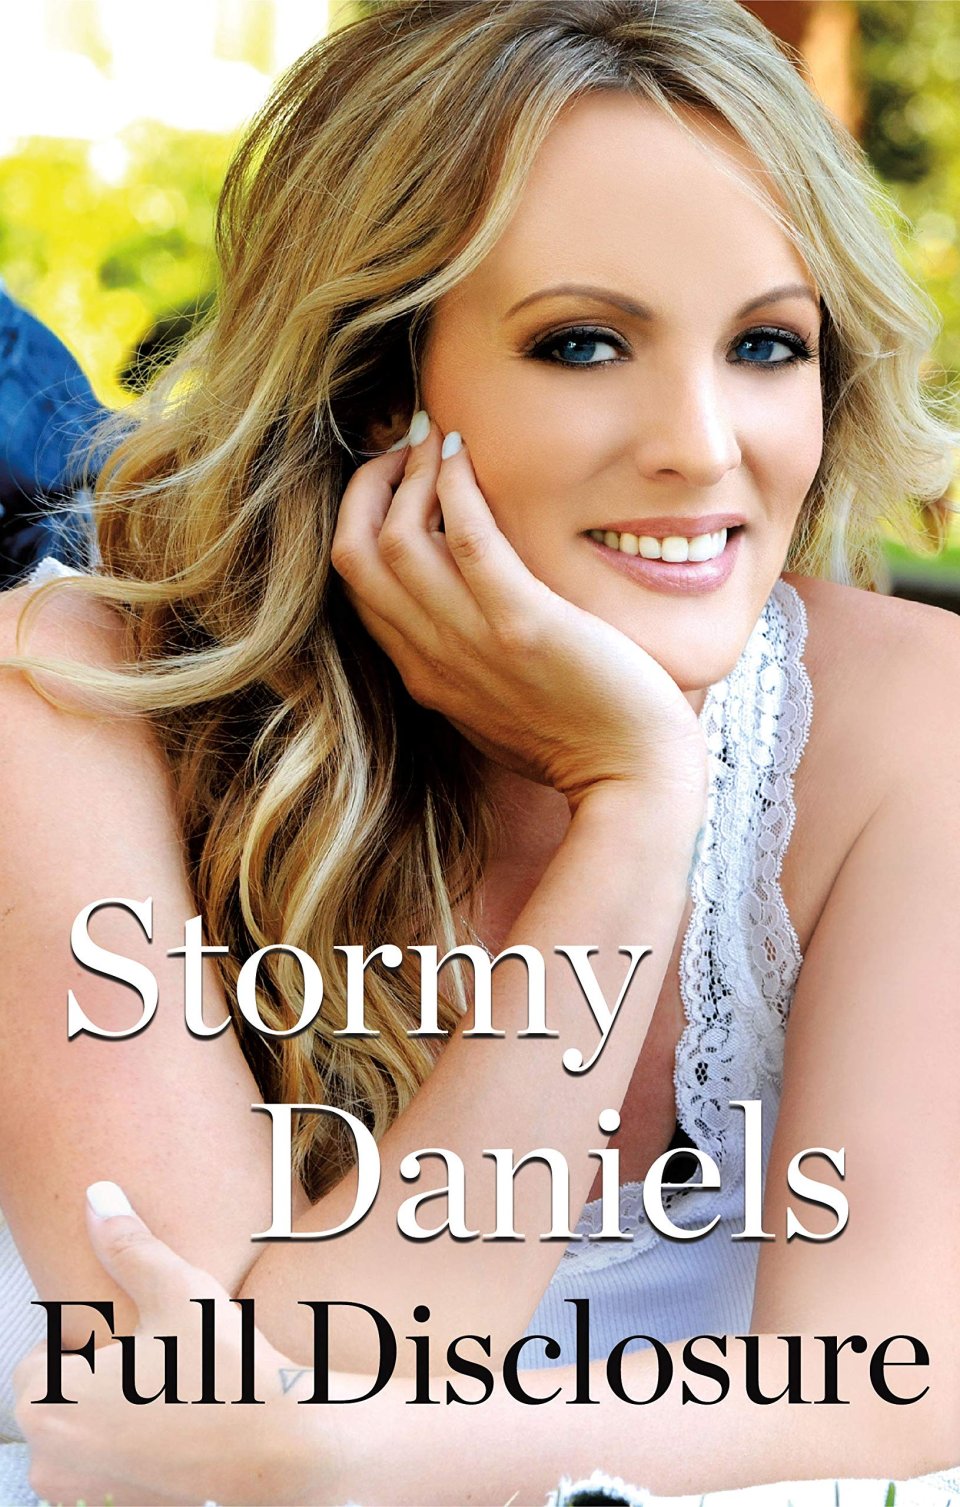 Pornoherečka Stormy Daniels napsala o svém údajném románku s Trumpem knihu nazvanoou Plné odhalení. V něm popsala i genitálie exprezidenta, čehož podle svých slov později litovala. Foto: Amazon